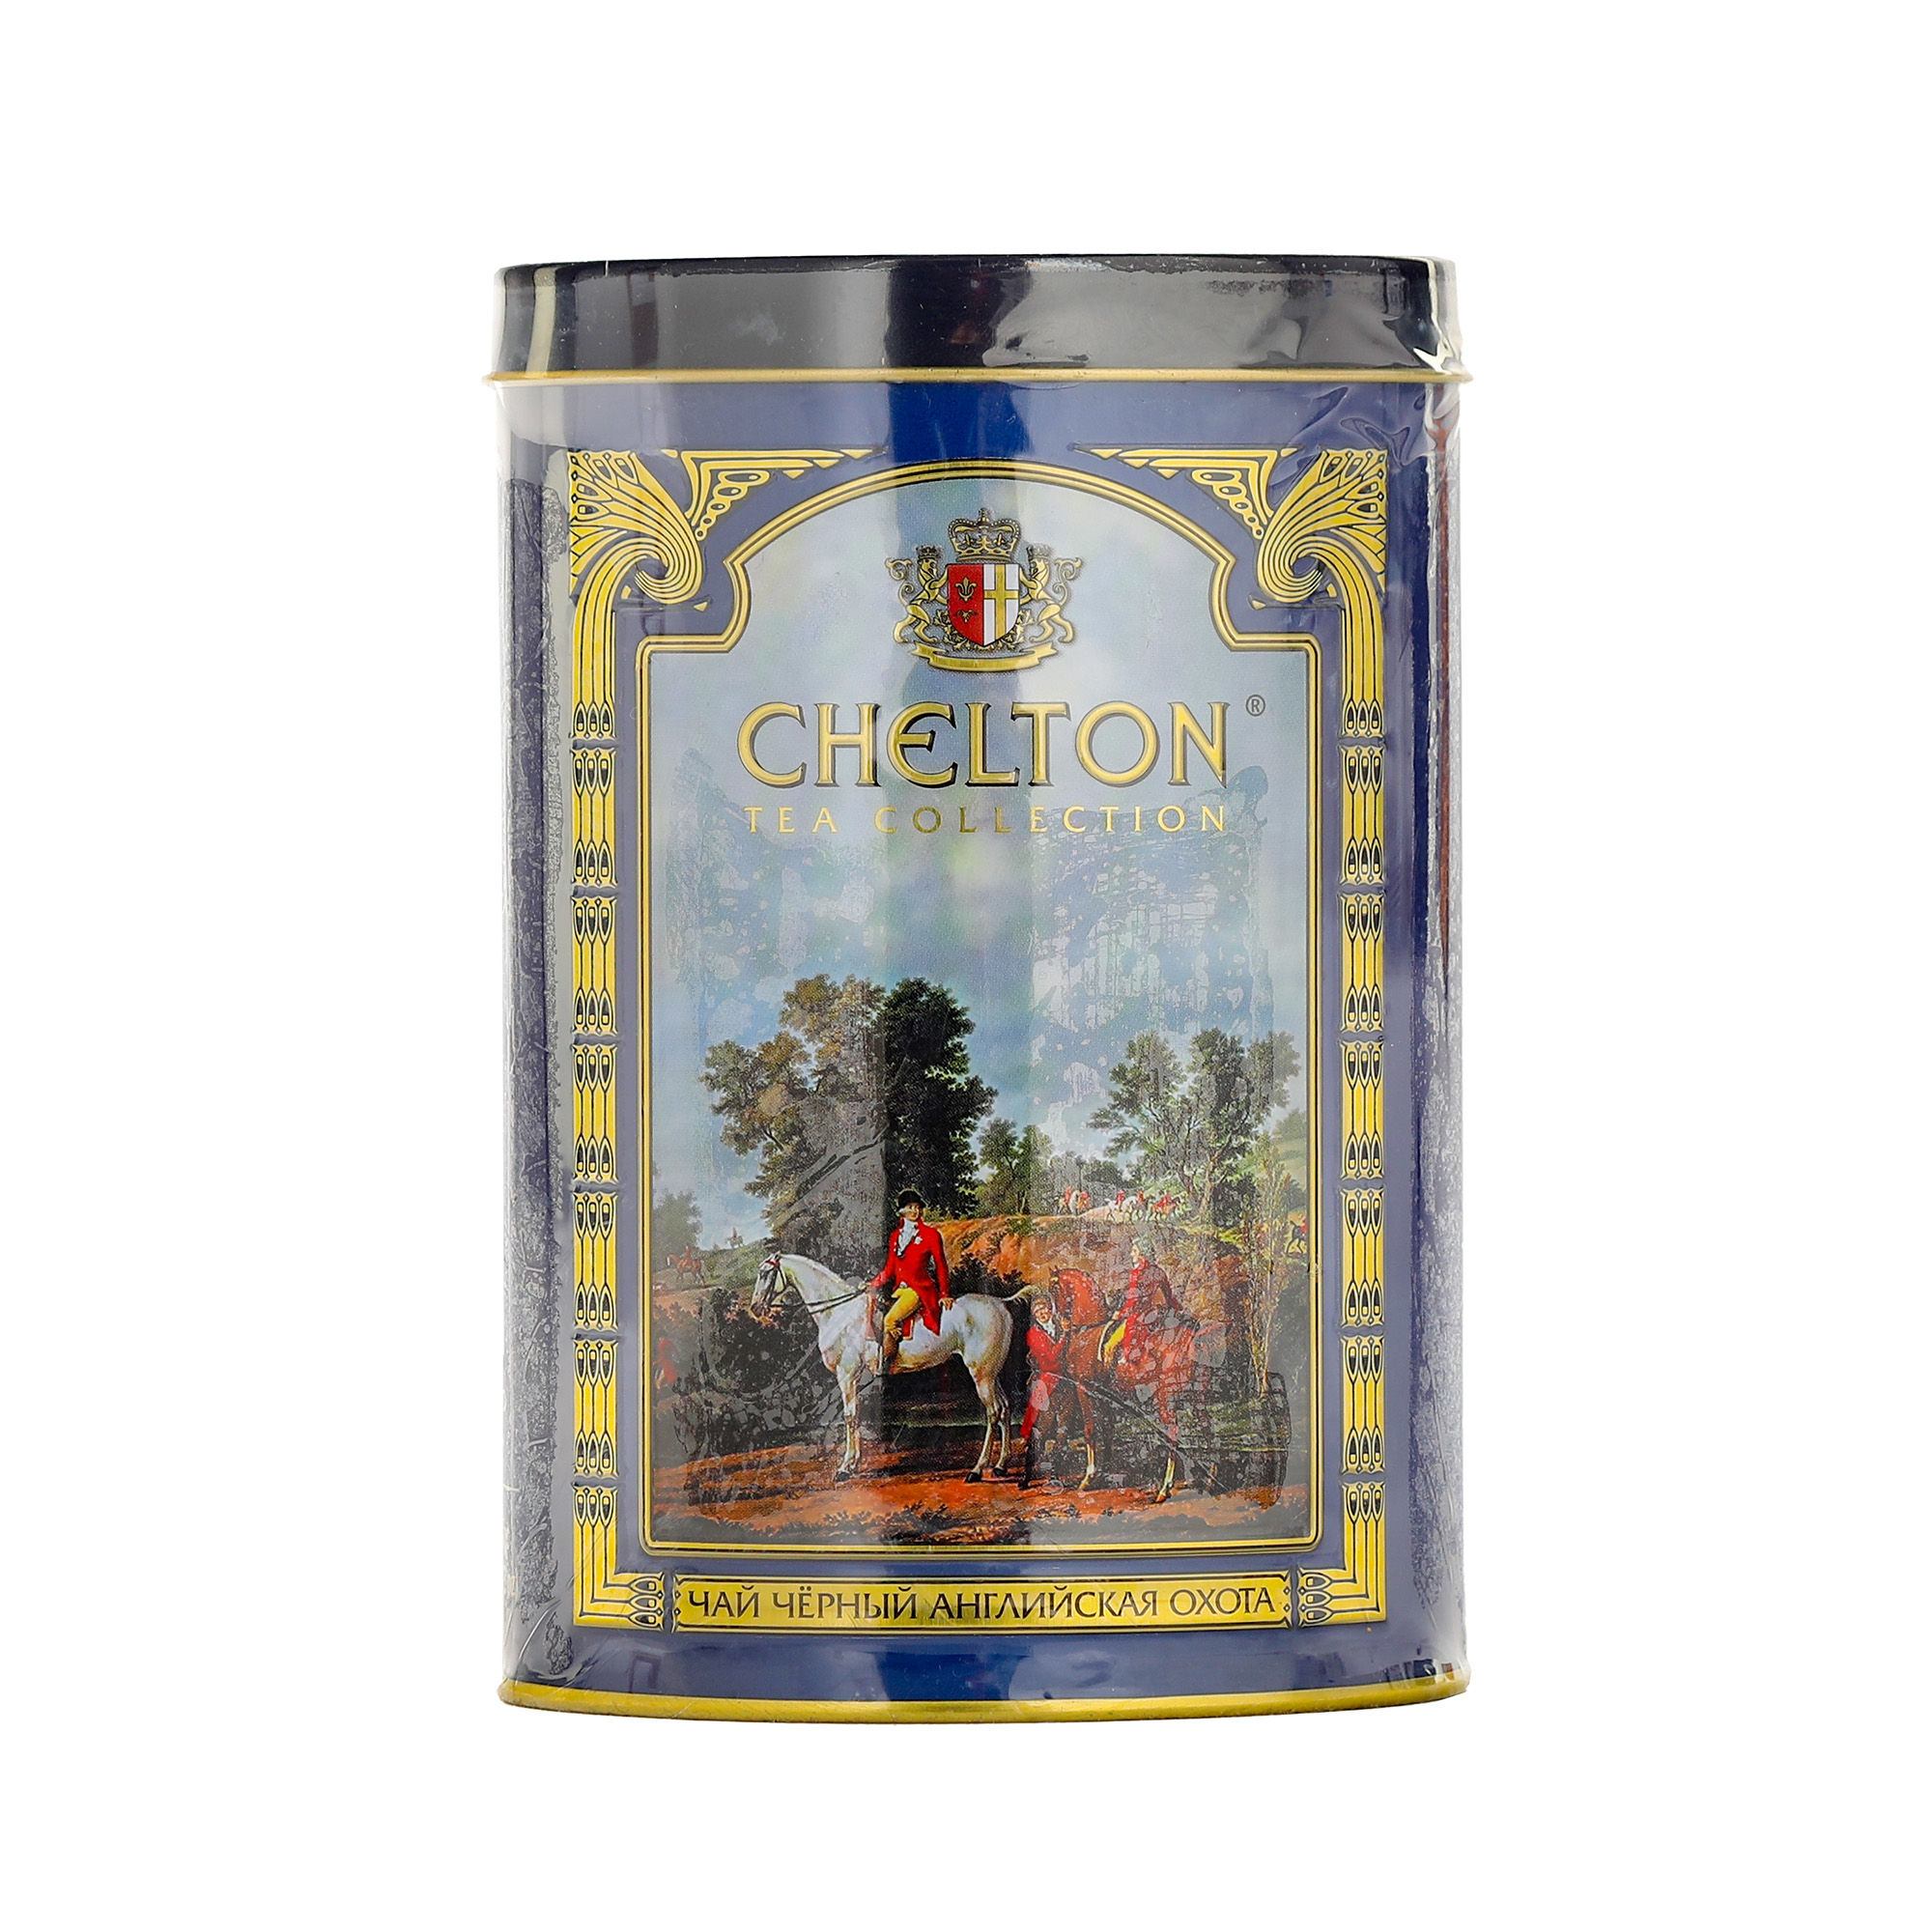 Чай Chelton Английская охота крупнолистовой, 100 г чай крупнолистовой yantra ора 100 г